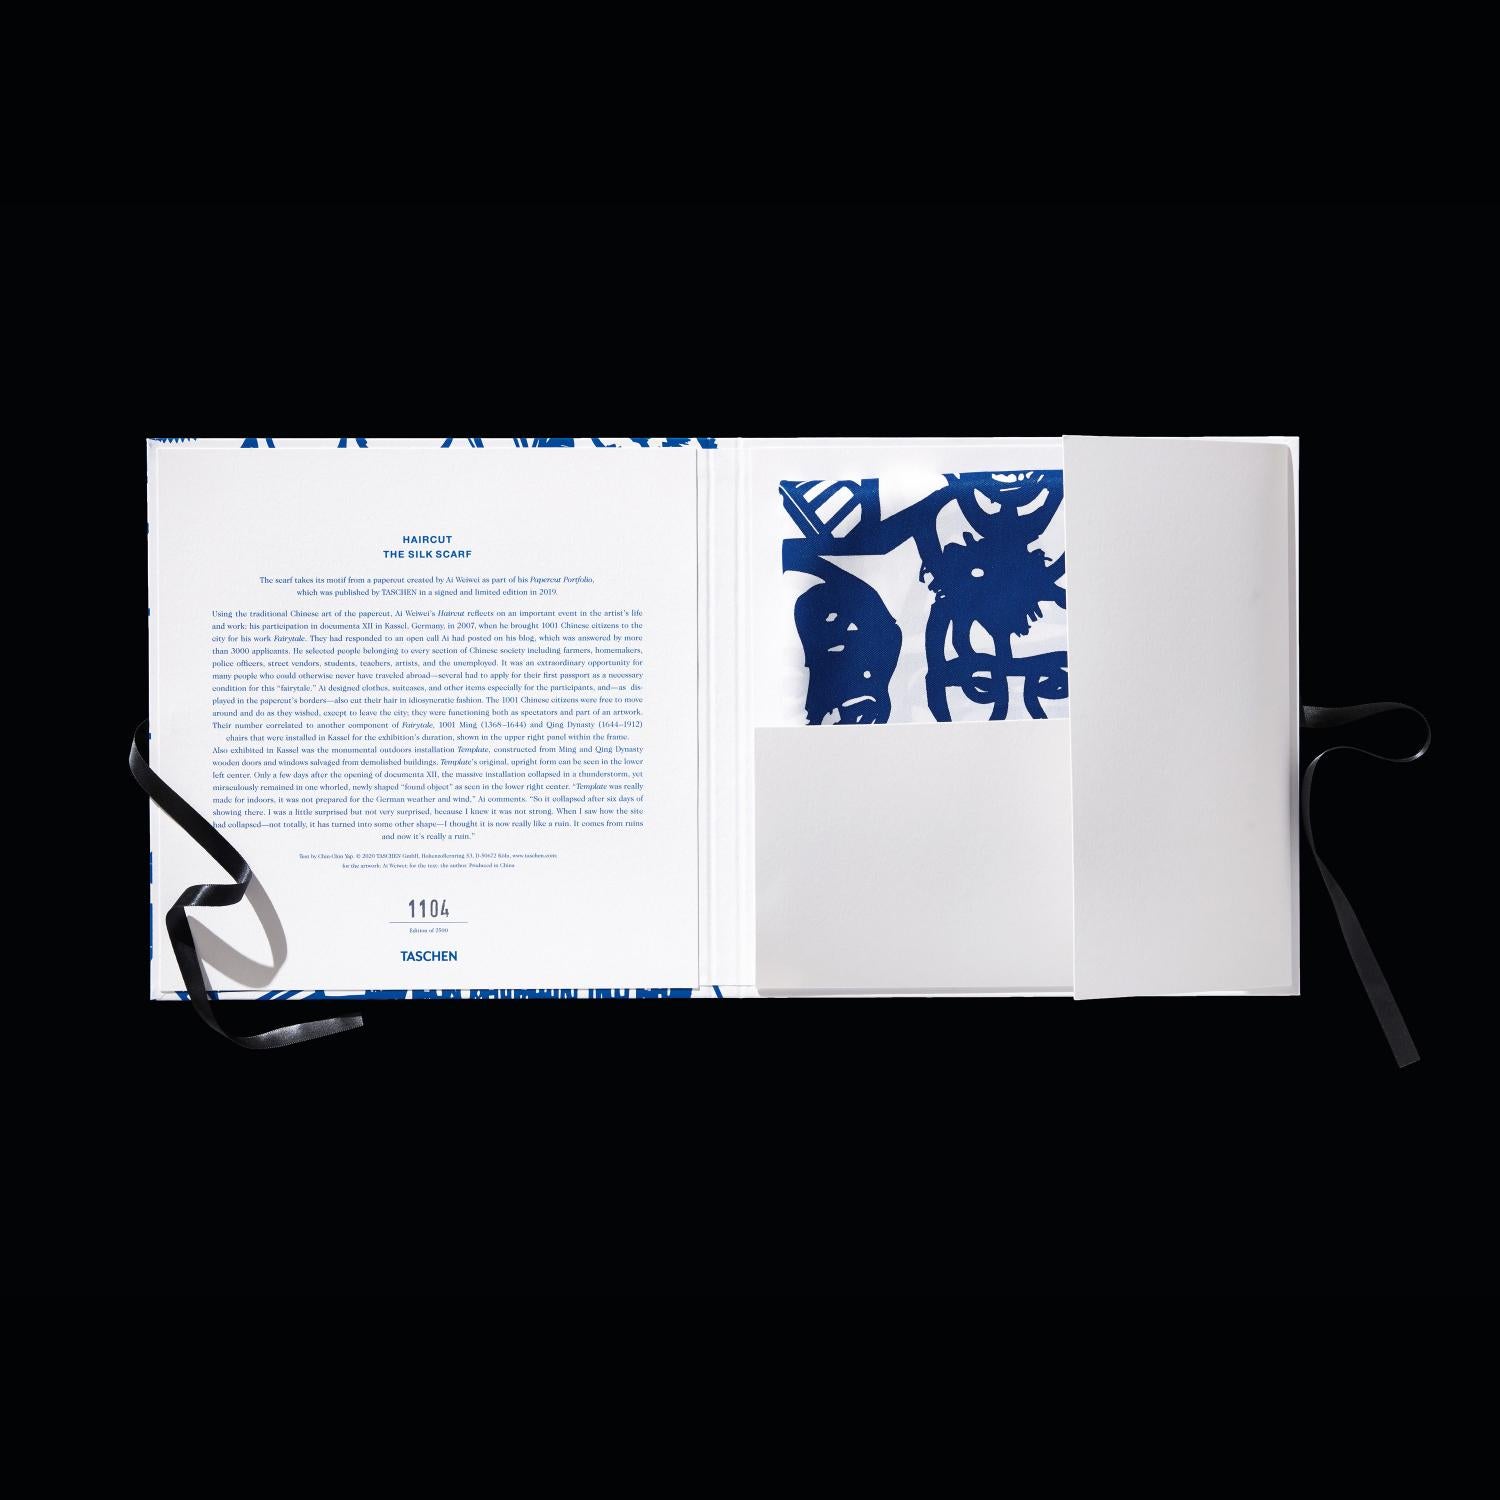 100% Seidenschal
handgewebt und mit Handsiebdruck
fertig mit handgerollten Kanten
Maße: 35.4 x 35,4 Zoll
auflage von 2.500 Stück
individuelle Geschenkbox

Das Motiv des Schals stammt von einem Scherenschnitt, den Ai Weiwei als Teil seines